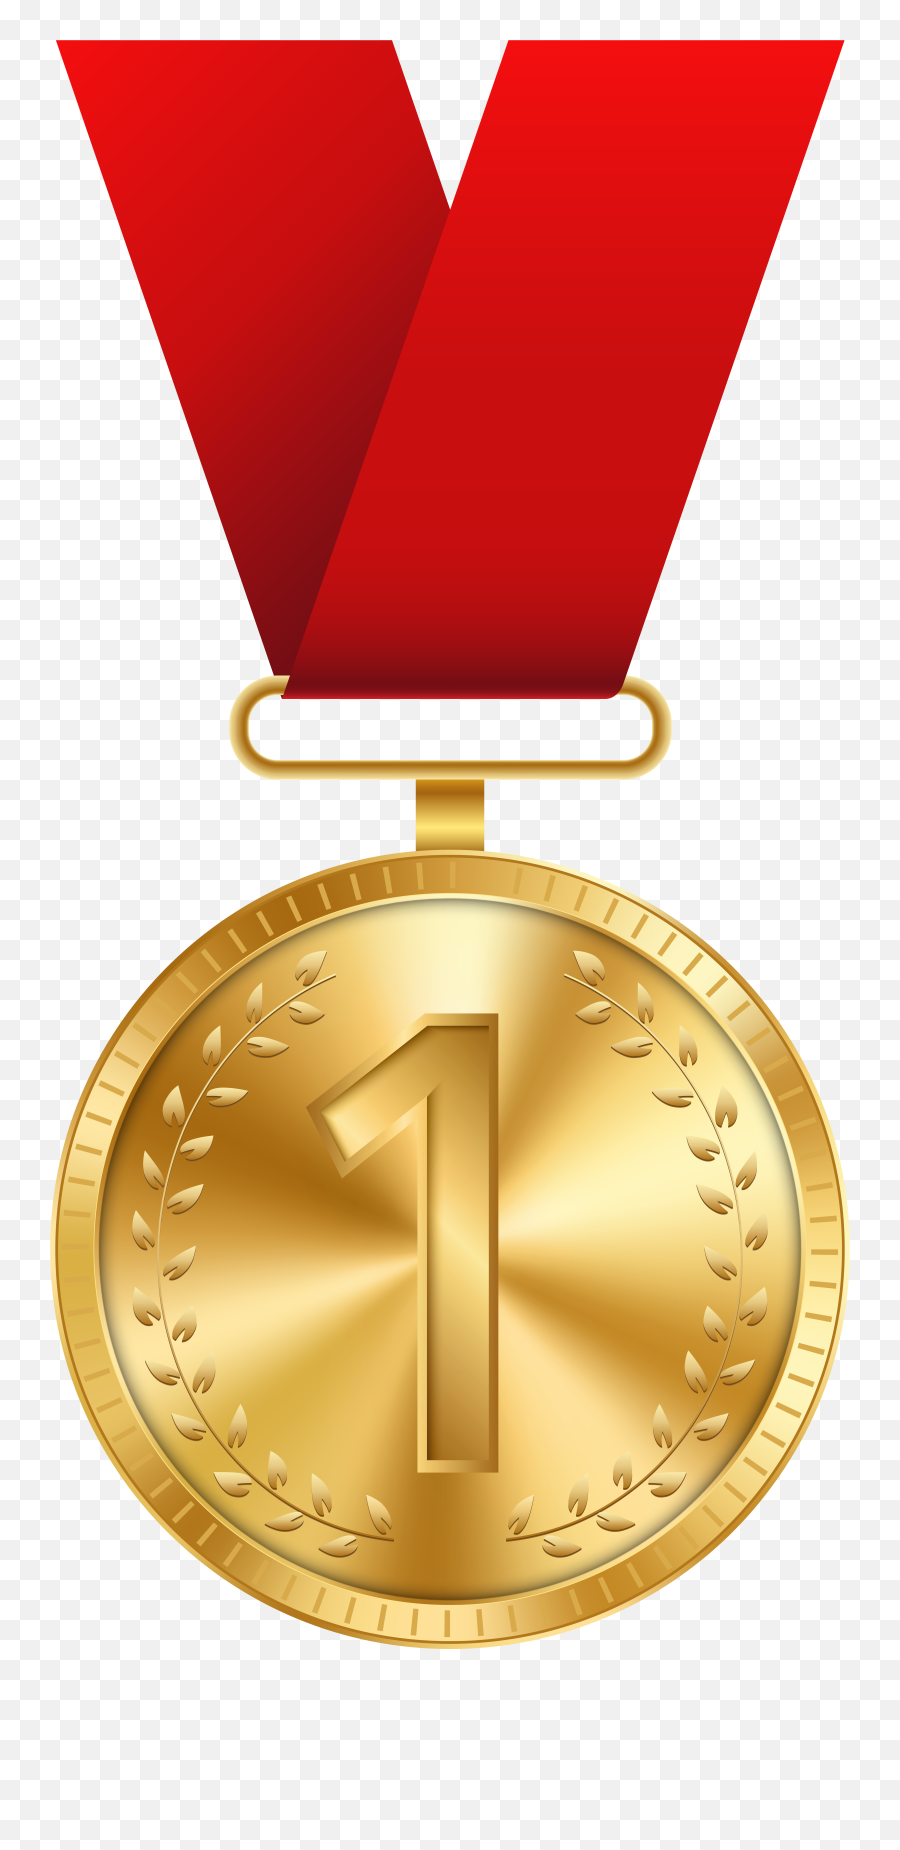 Free Medal Transparent Background Download Free Clip Art - Gold Medal Png Emoji,Gold Medal Emoji